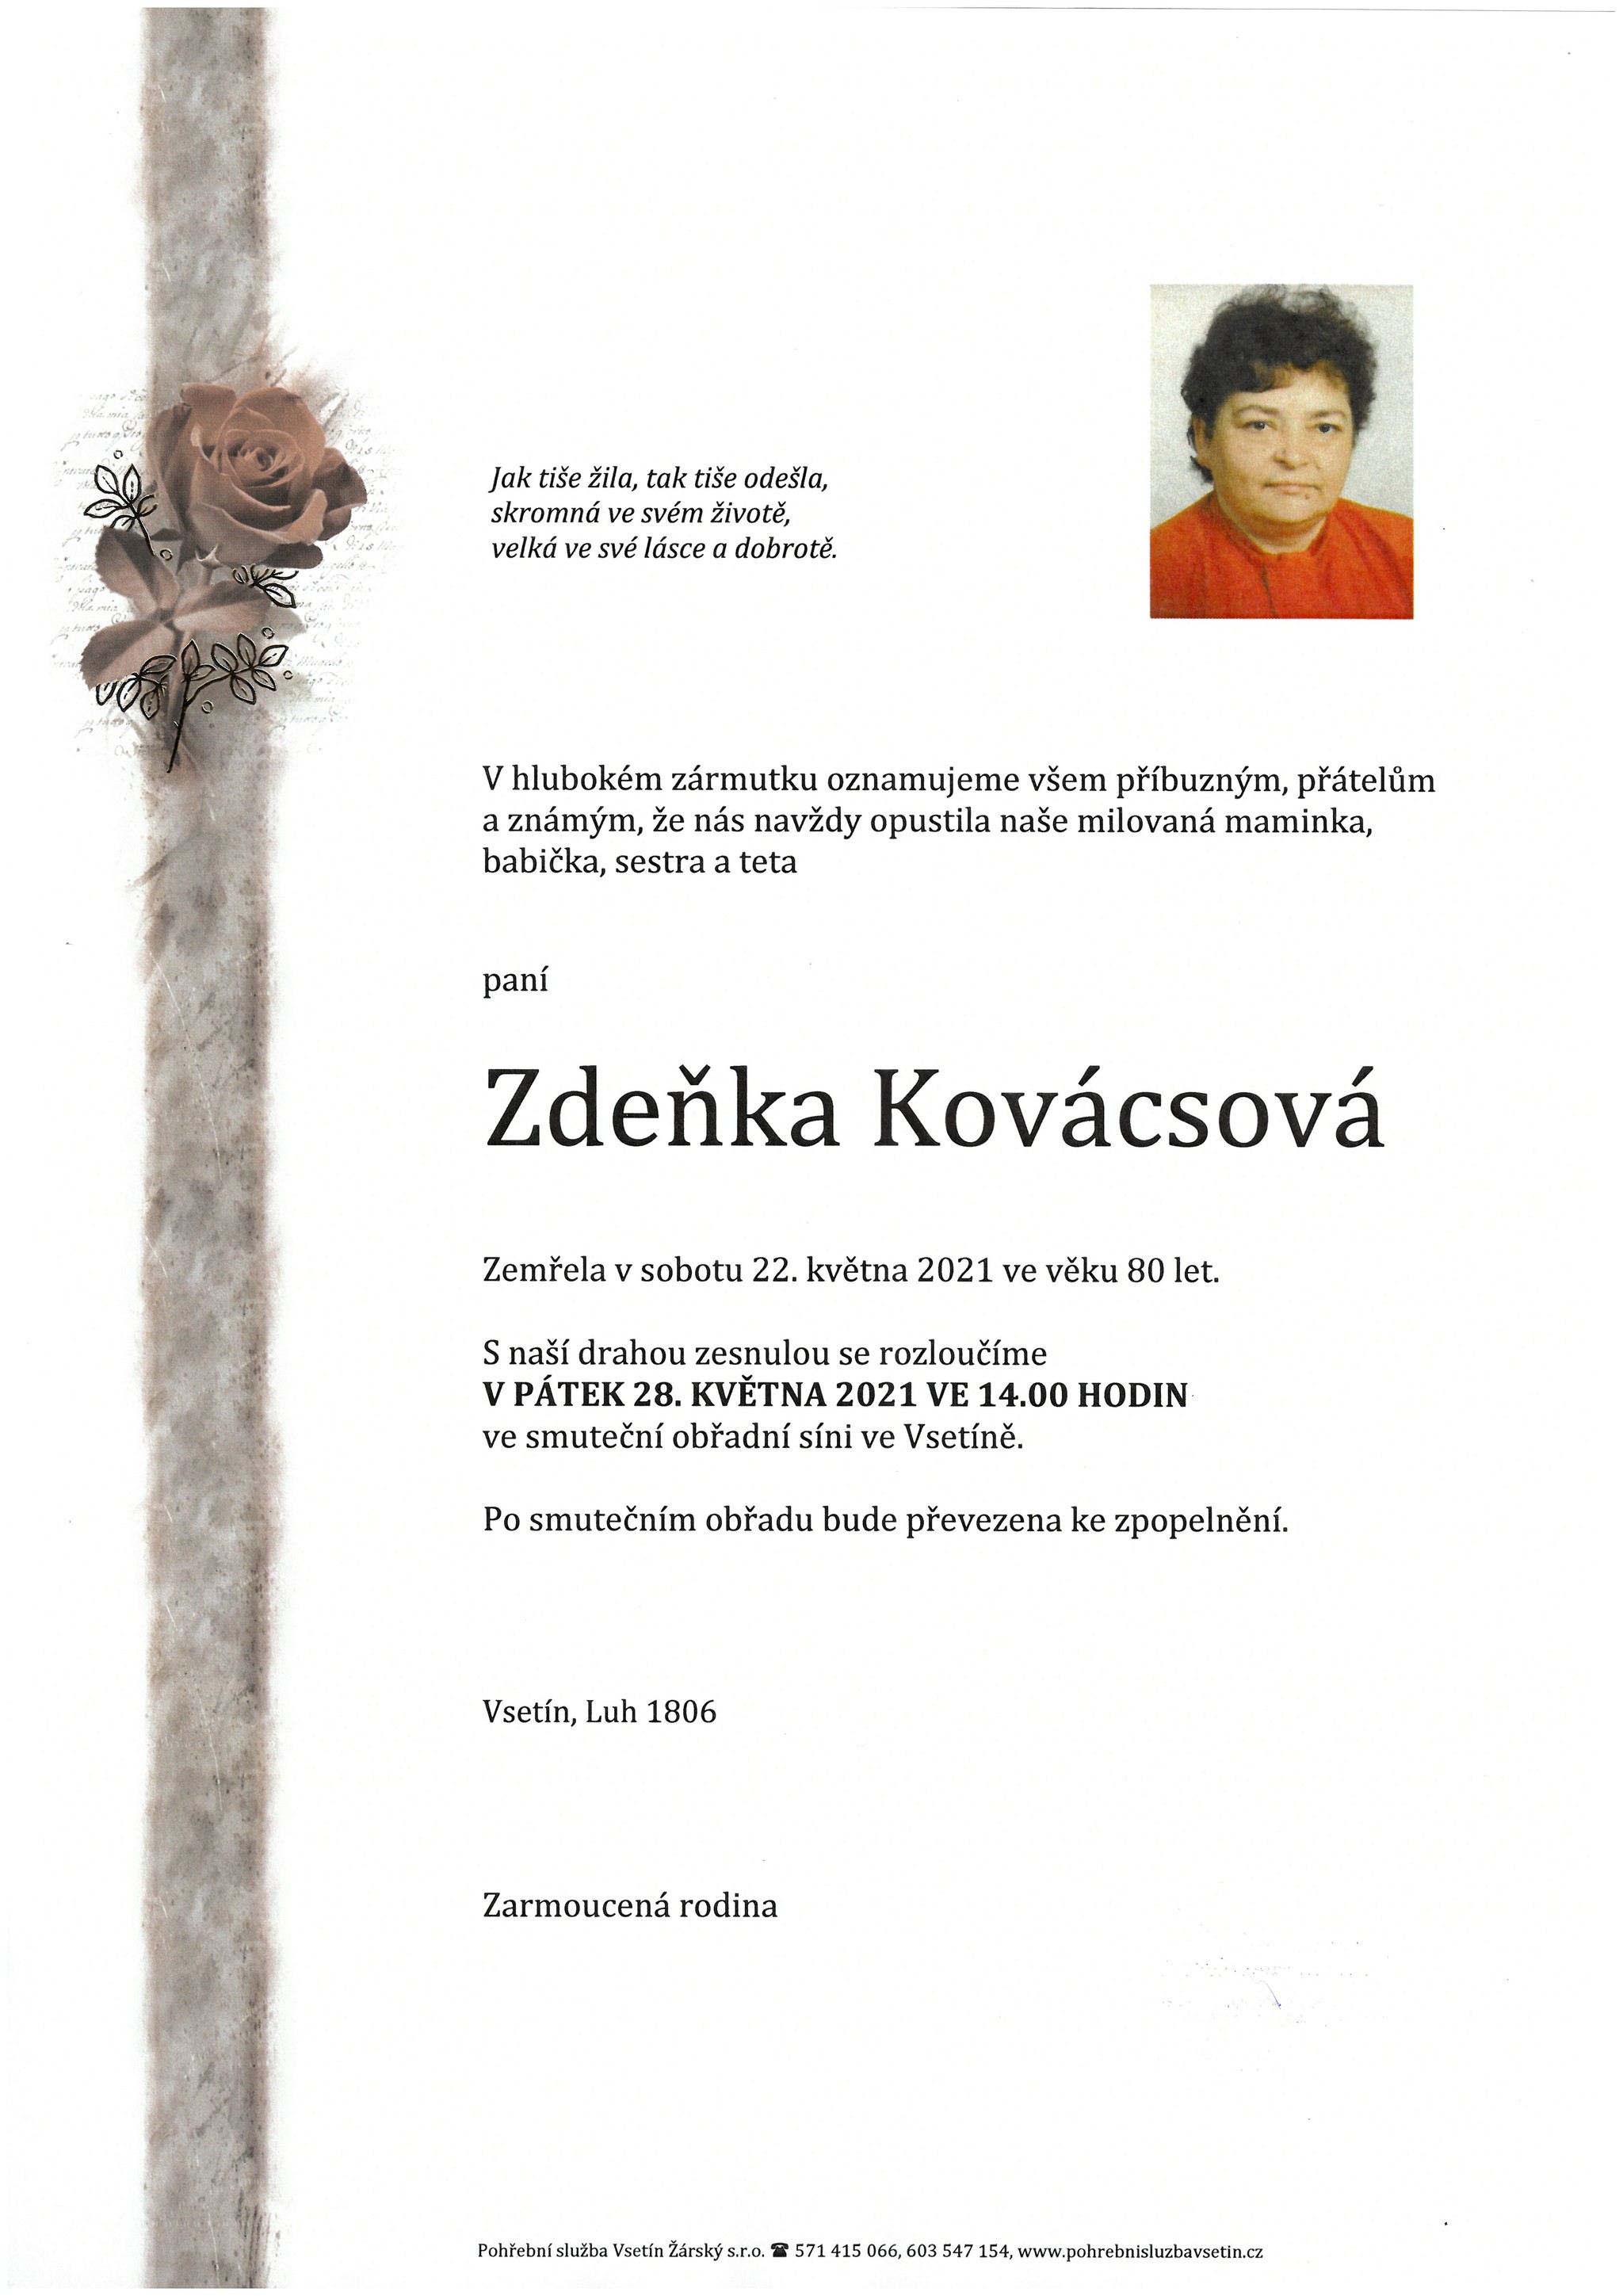 Zdeňka Kovácsová